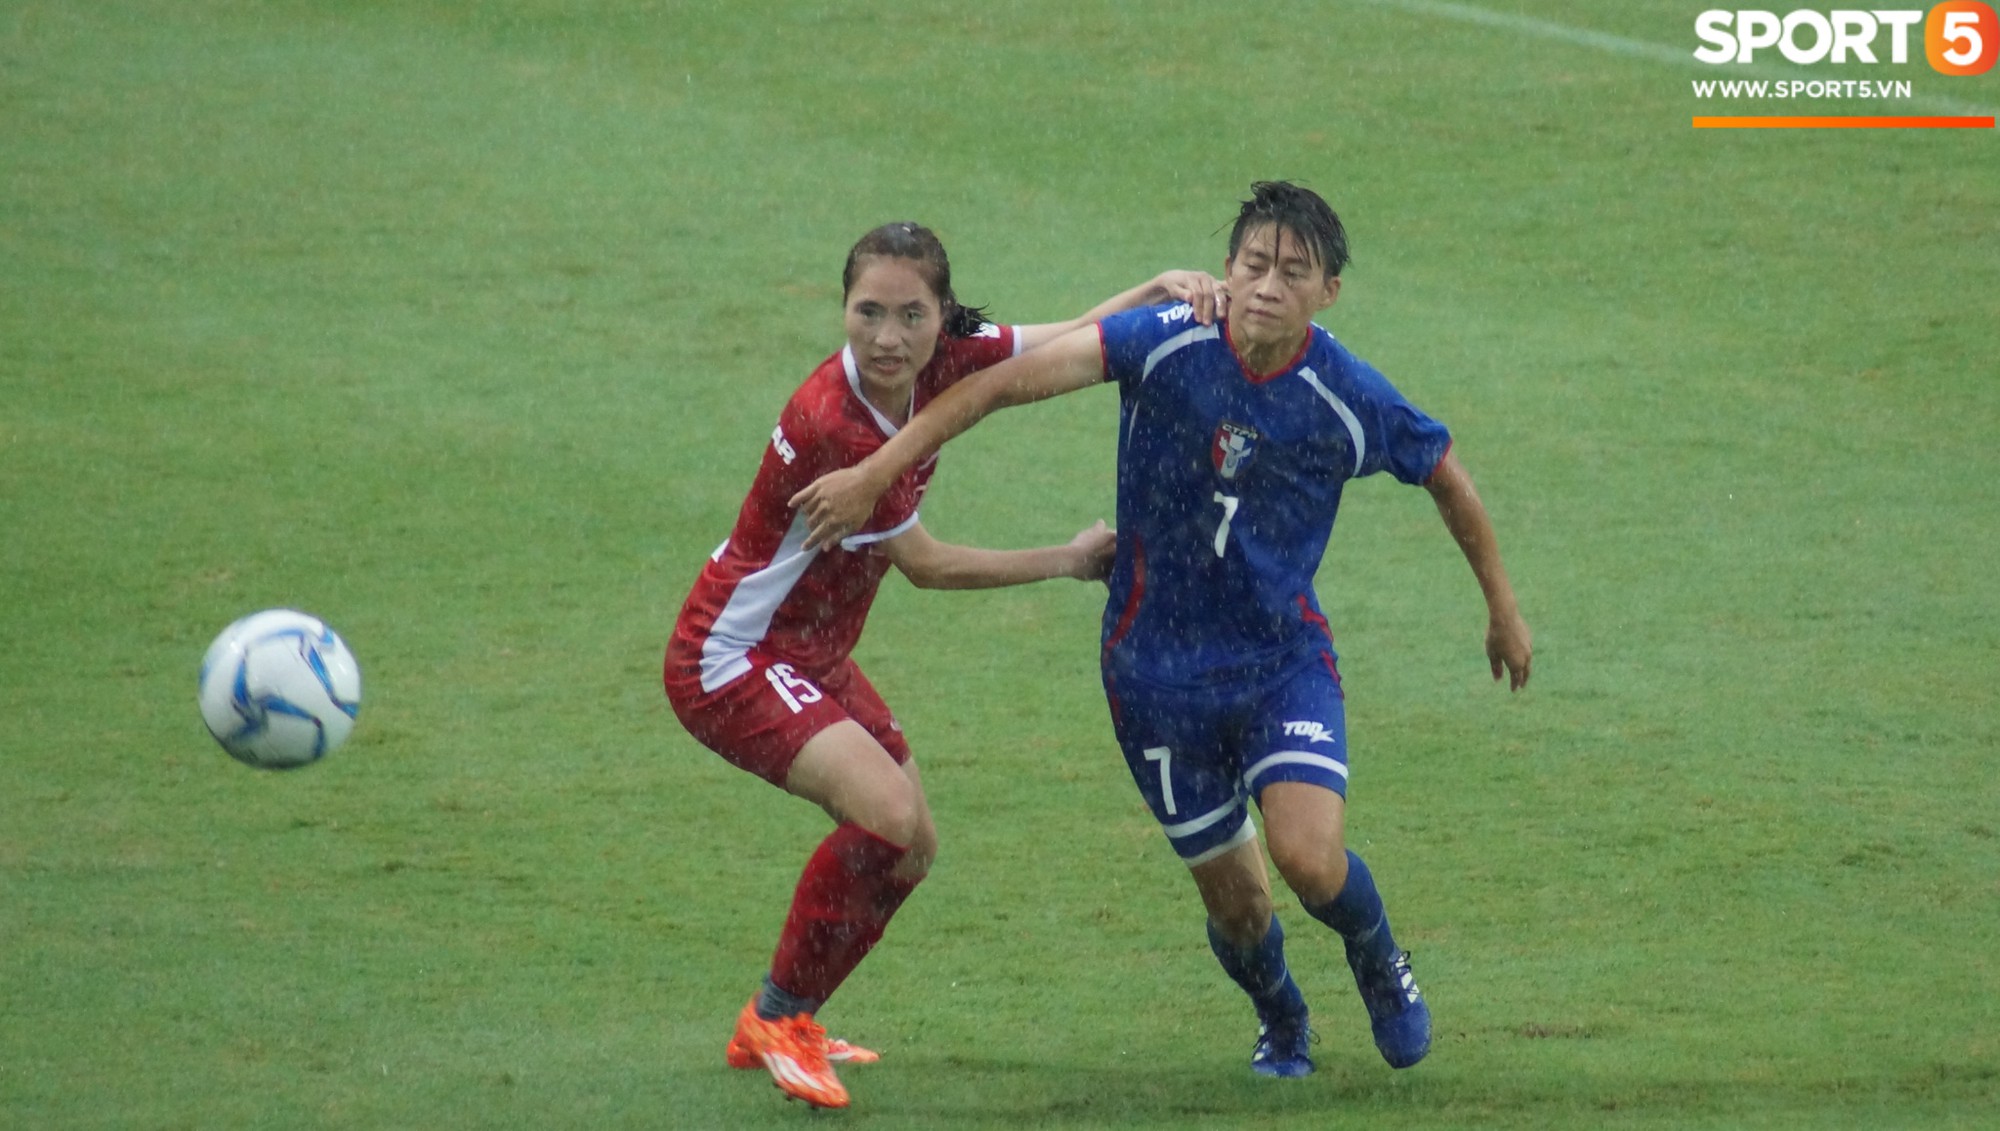 ĐT nữ Việt Nam đánh bại Đài Bắc Trung Hoa 4-0 trong trận tái đấu - Ảnh 6.